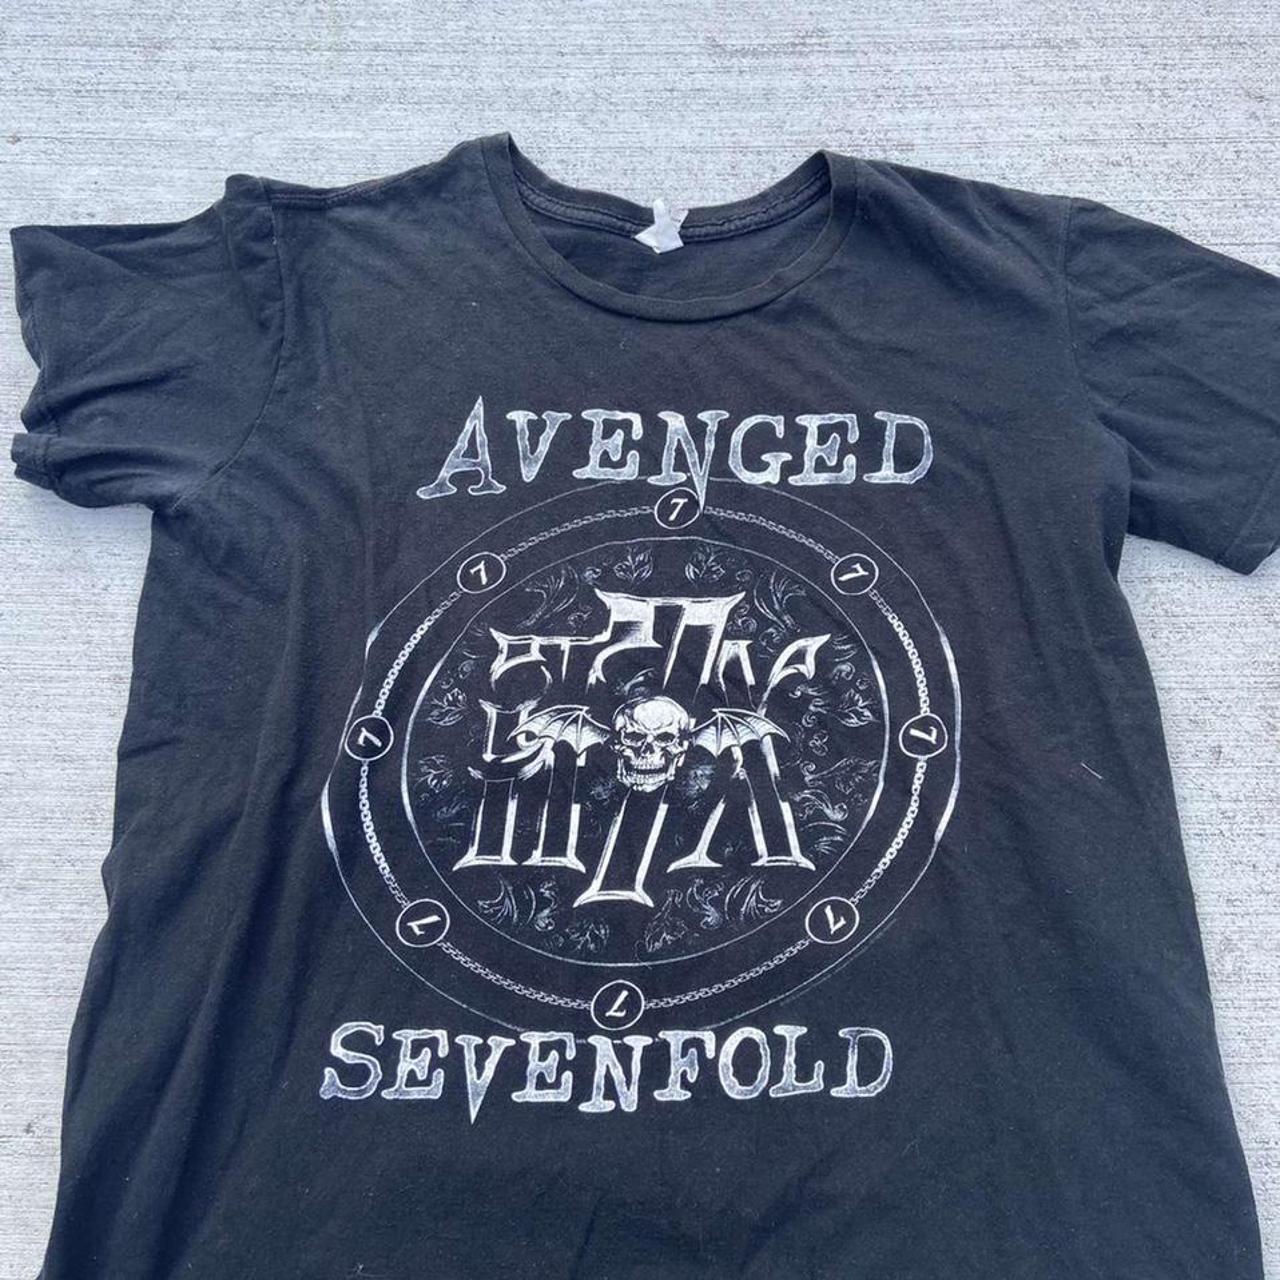 Product Image 1 - Avenged sevenfold t shirt. Size